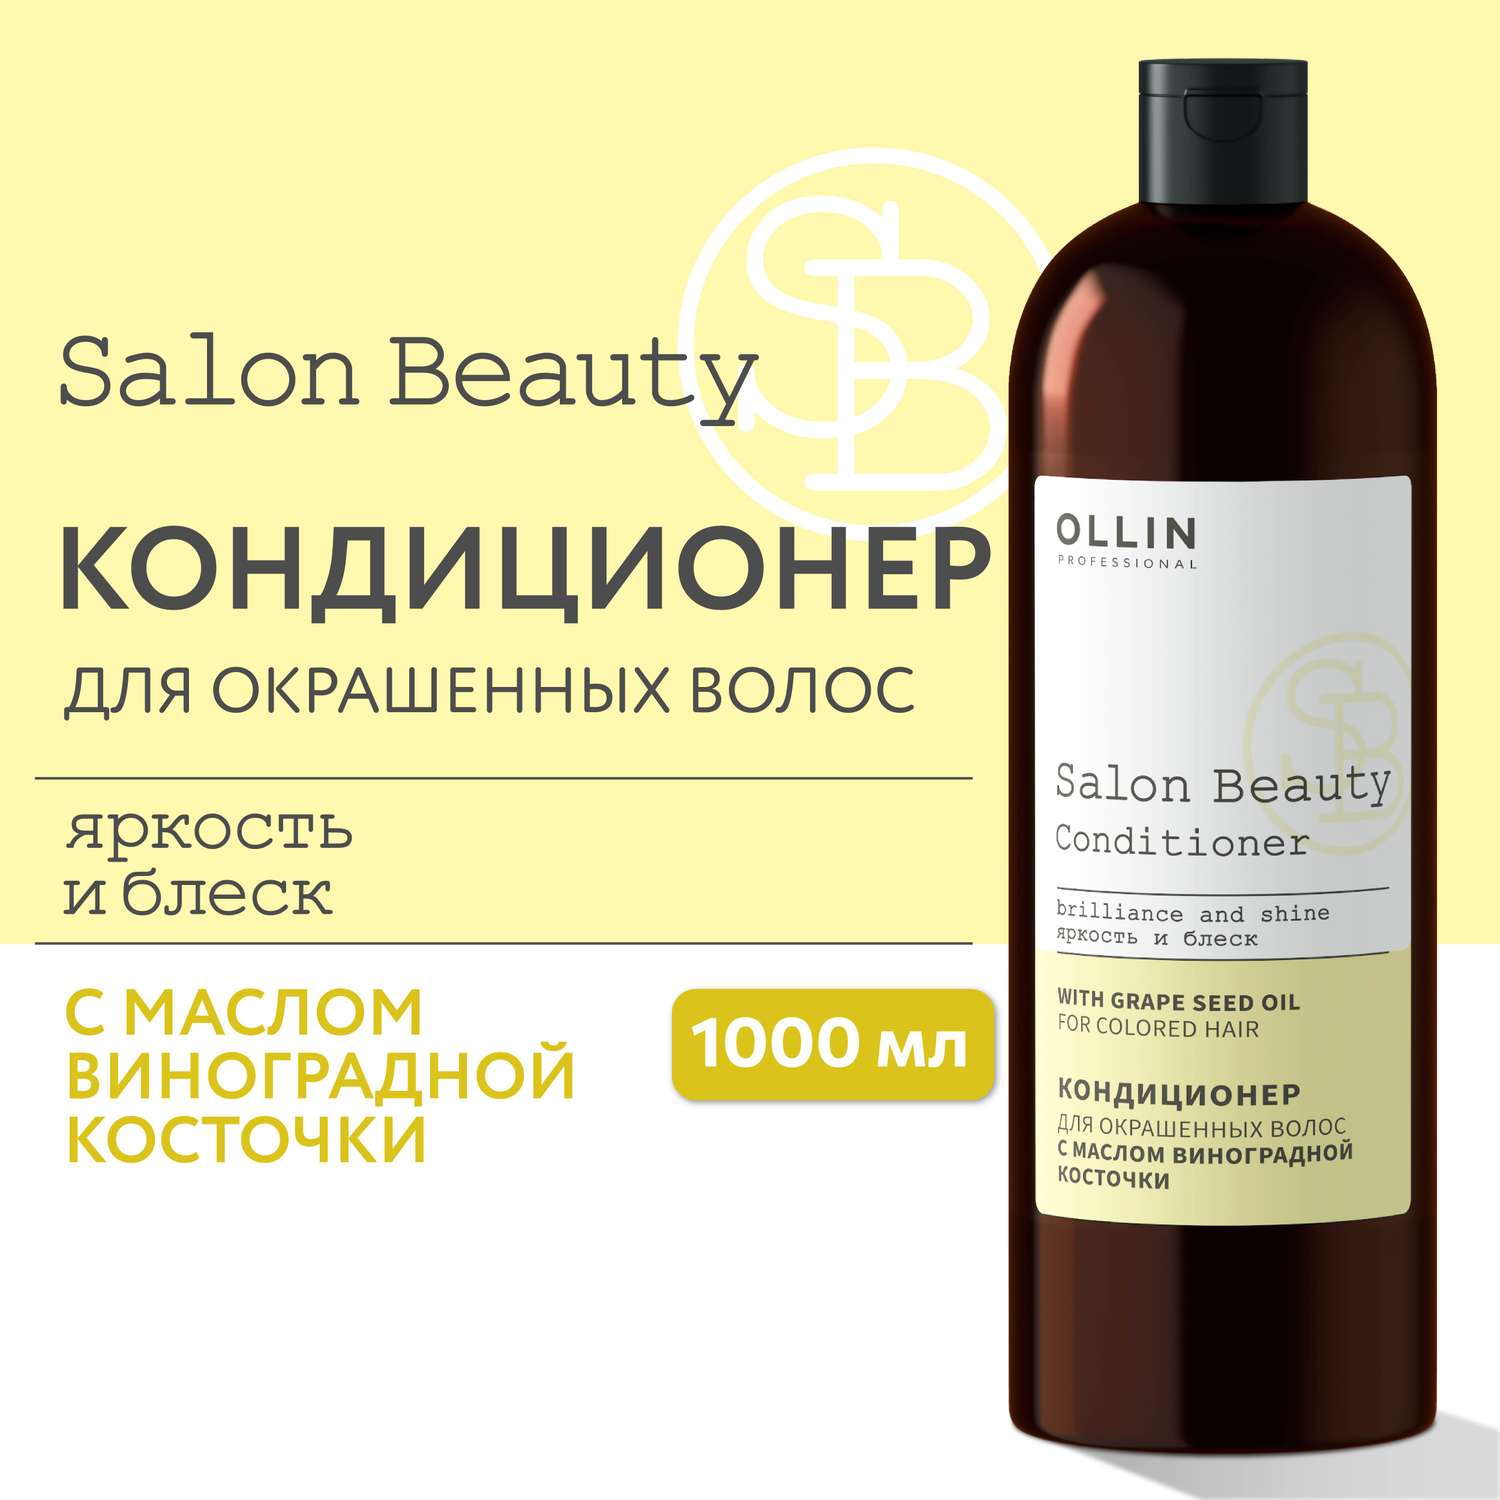 Кондиционер Ollin salon beauty для окрашенных волос с маслом виноградной косточки 1000 мл - фото 2